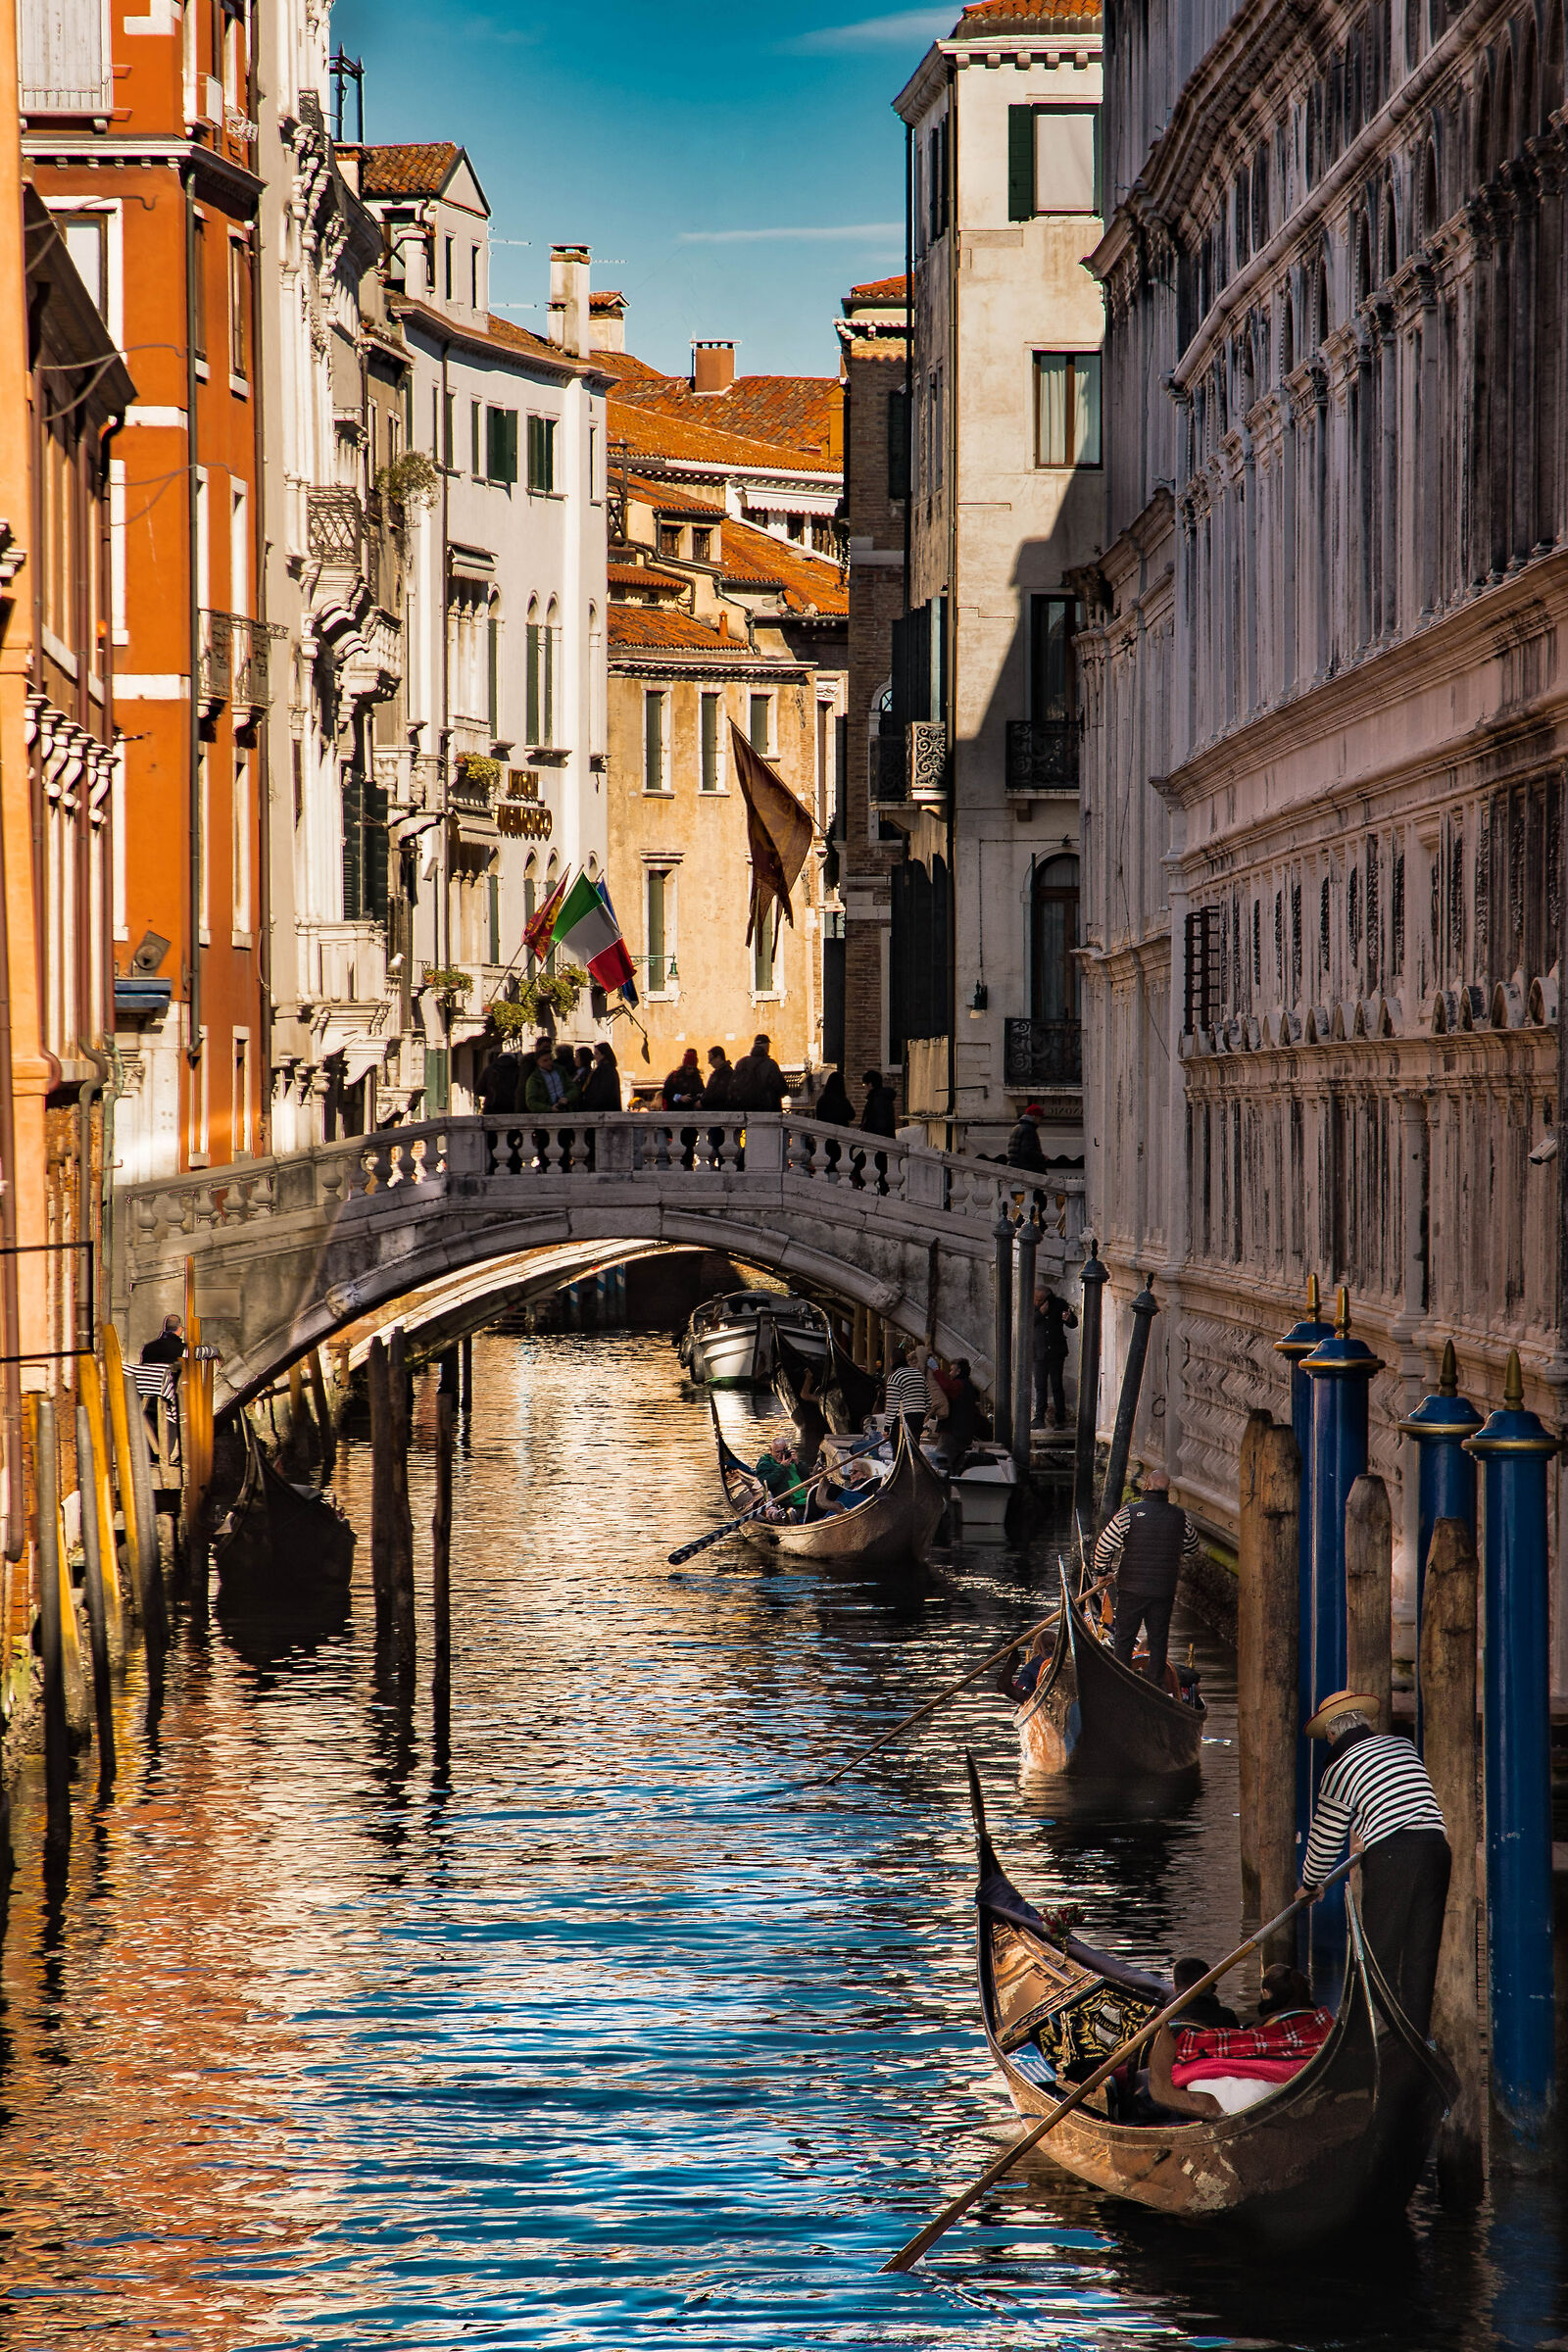 Semplicemente Venezia ......